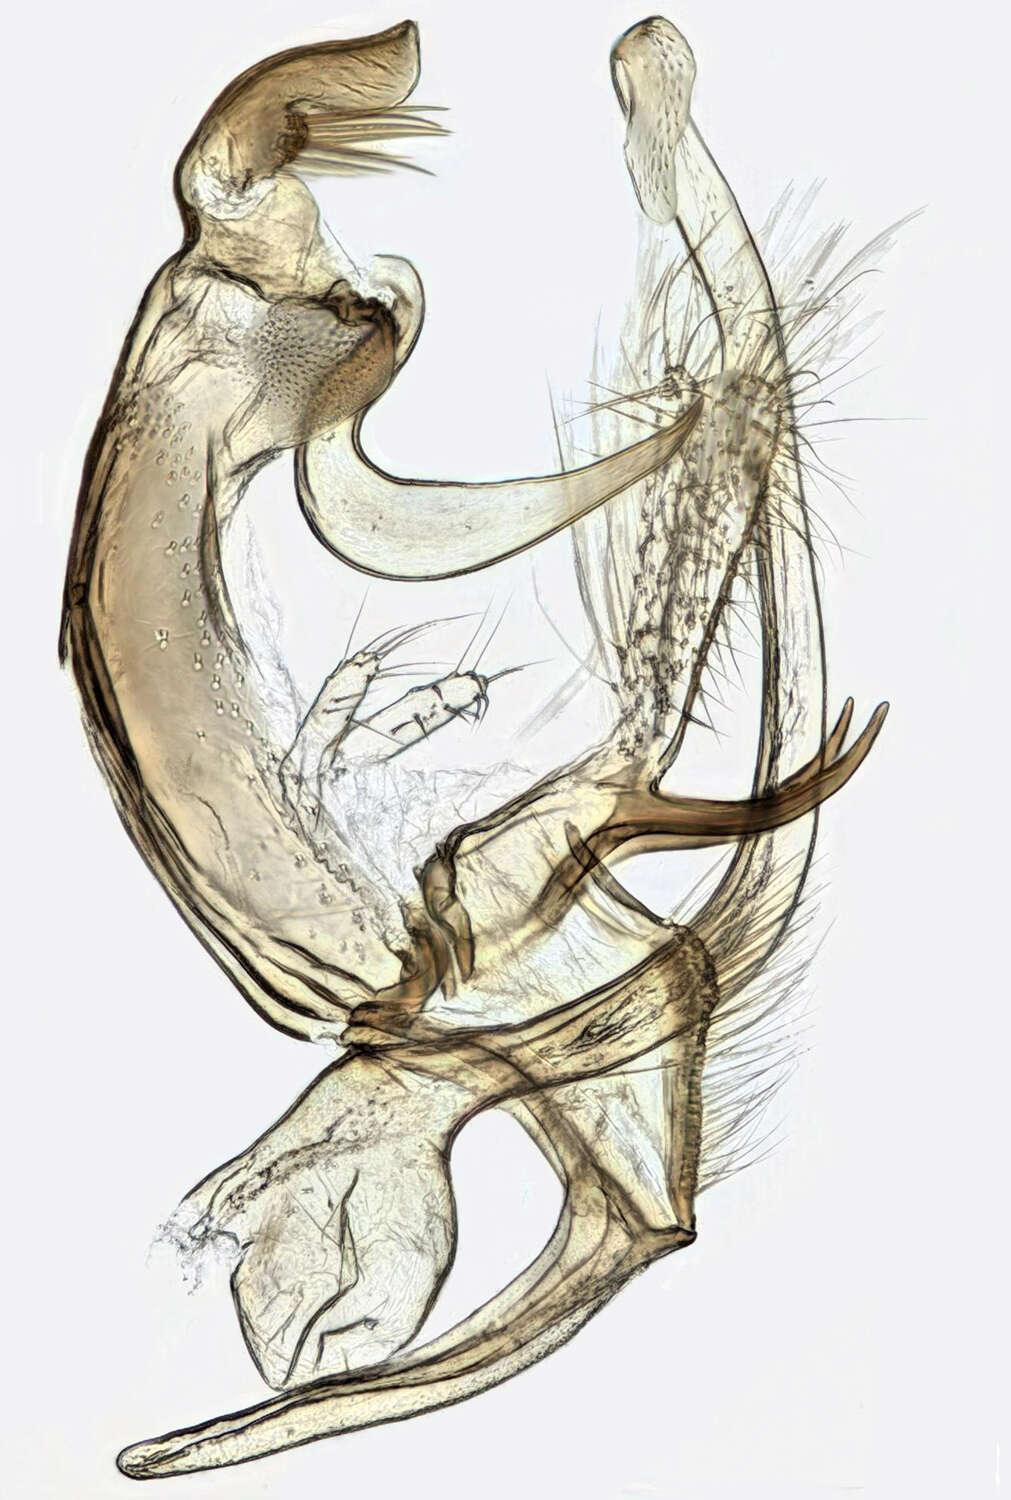 Image de Bryotropha similis Stainton 1854